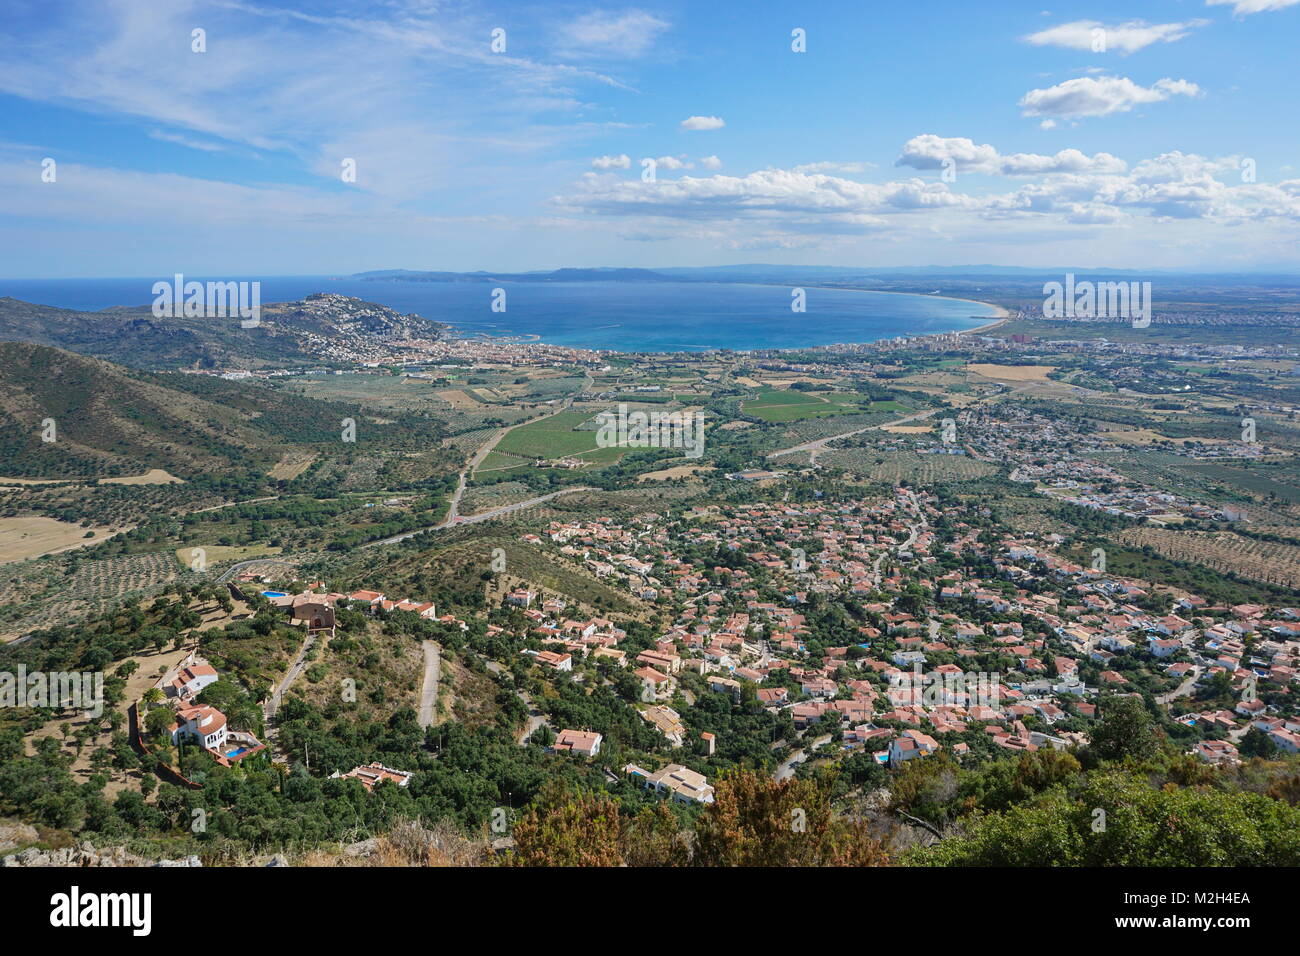 Spagna costa brava paesaggio la baia e la città di Roses visto dalla montagna, mare Mediterraneo, Alt Emporda, Girona, Catalogna Foto Stock